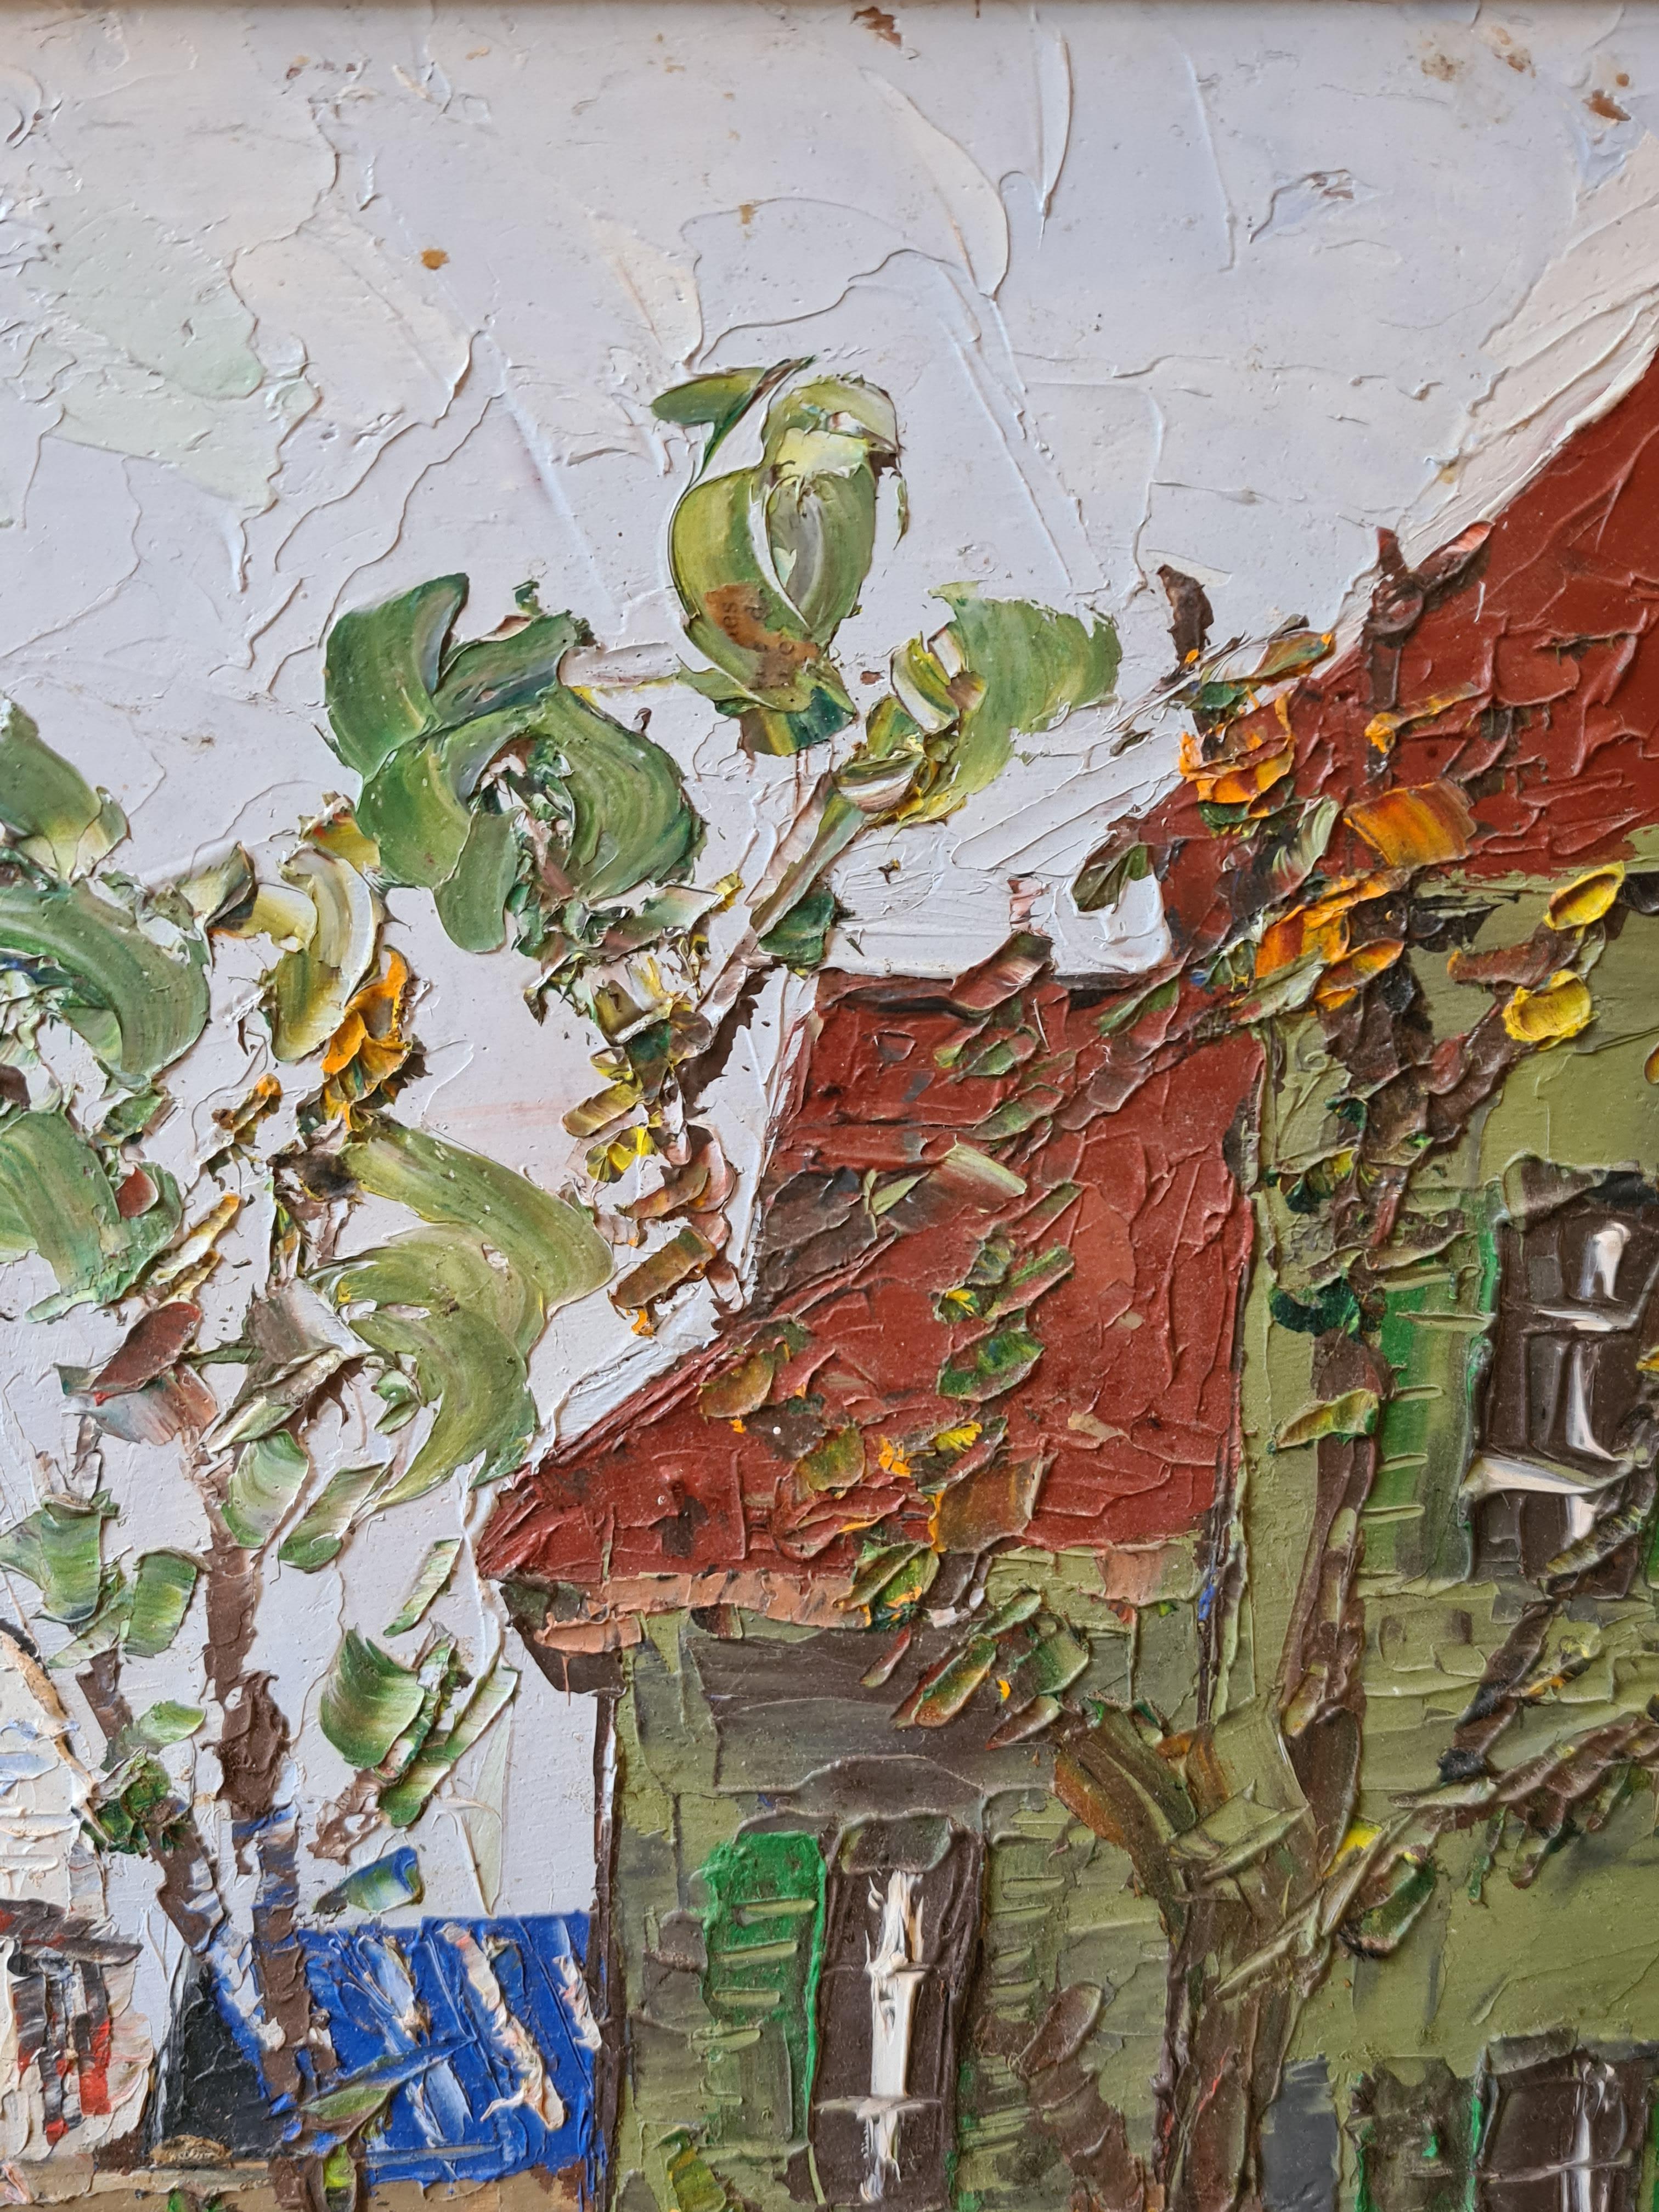 Französischer Expressionist, Öl auf Karton, Place du Tertre und Sacre Coeur in Paris von Bernard Vivier. Signiert auf der Rückseite der Tafel, präsentiert in einem schlichten Holzrahmen.

Ein wunderschönes, farbenfrohes und lebhaftes Gemälde dieses